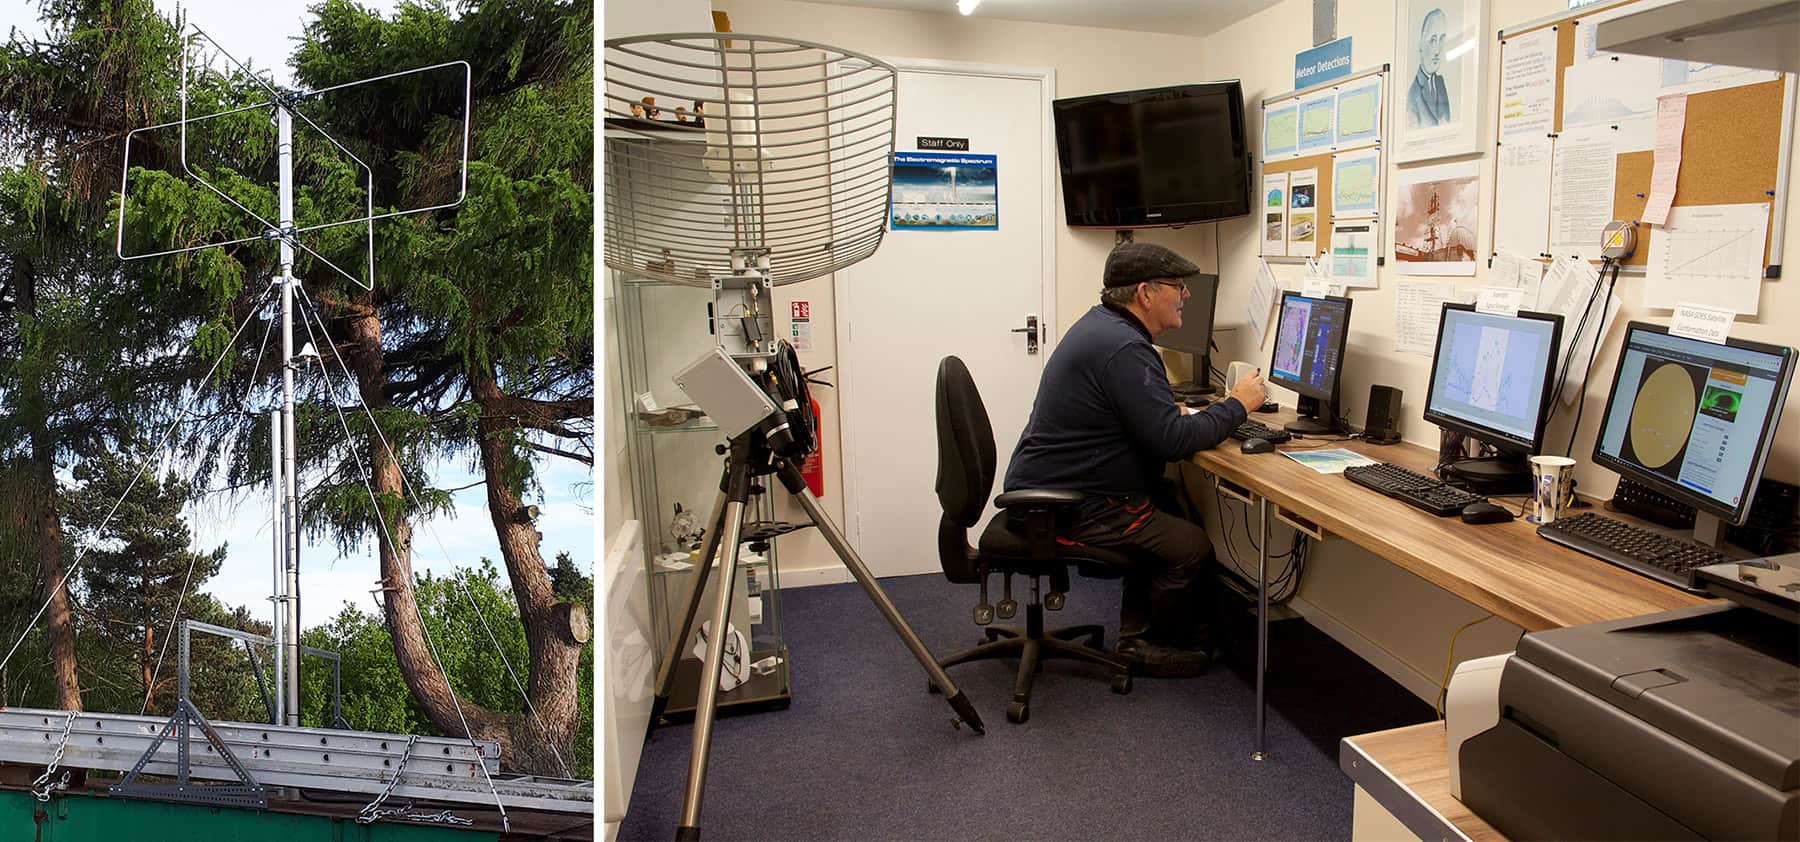 To billeder: et radiofyr og en mand sad ved et skrivebord og kiggede på flere monitorer med data